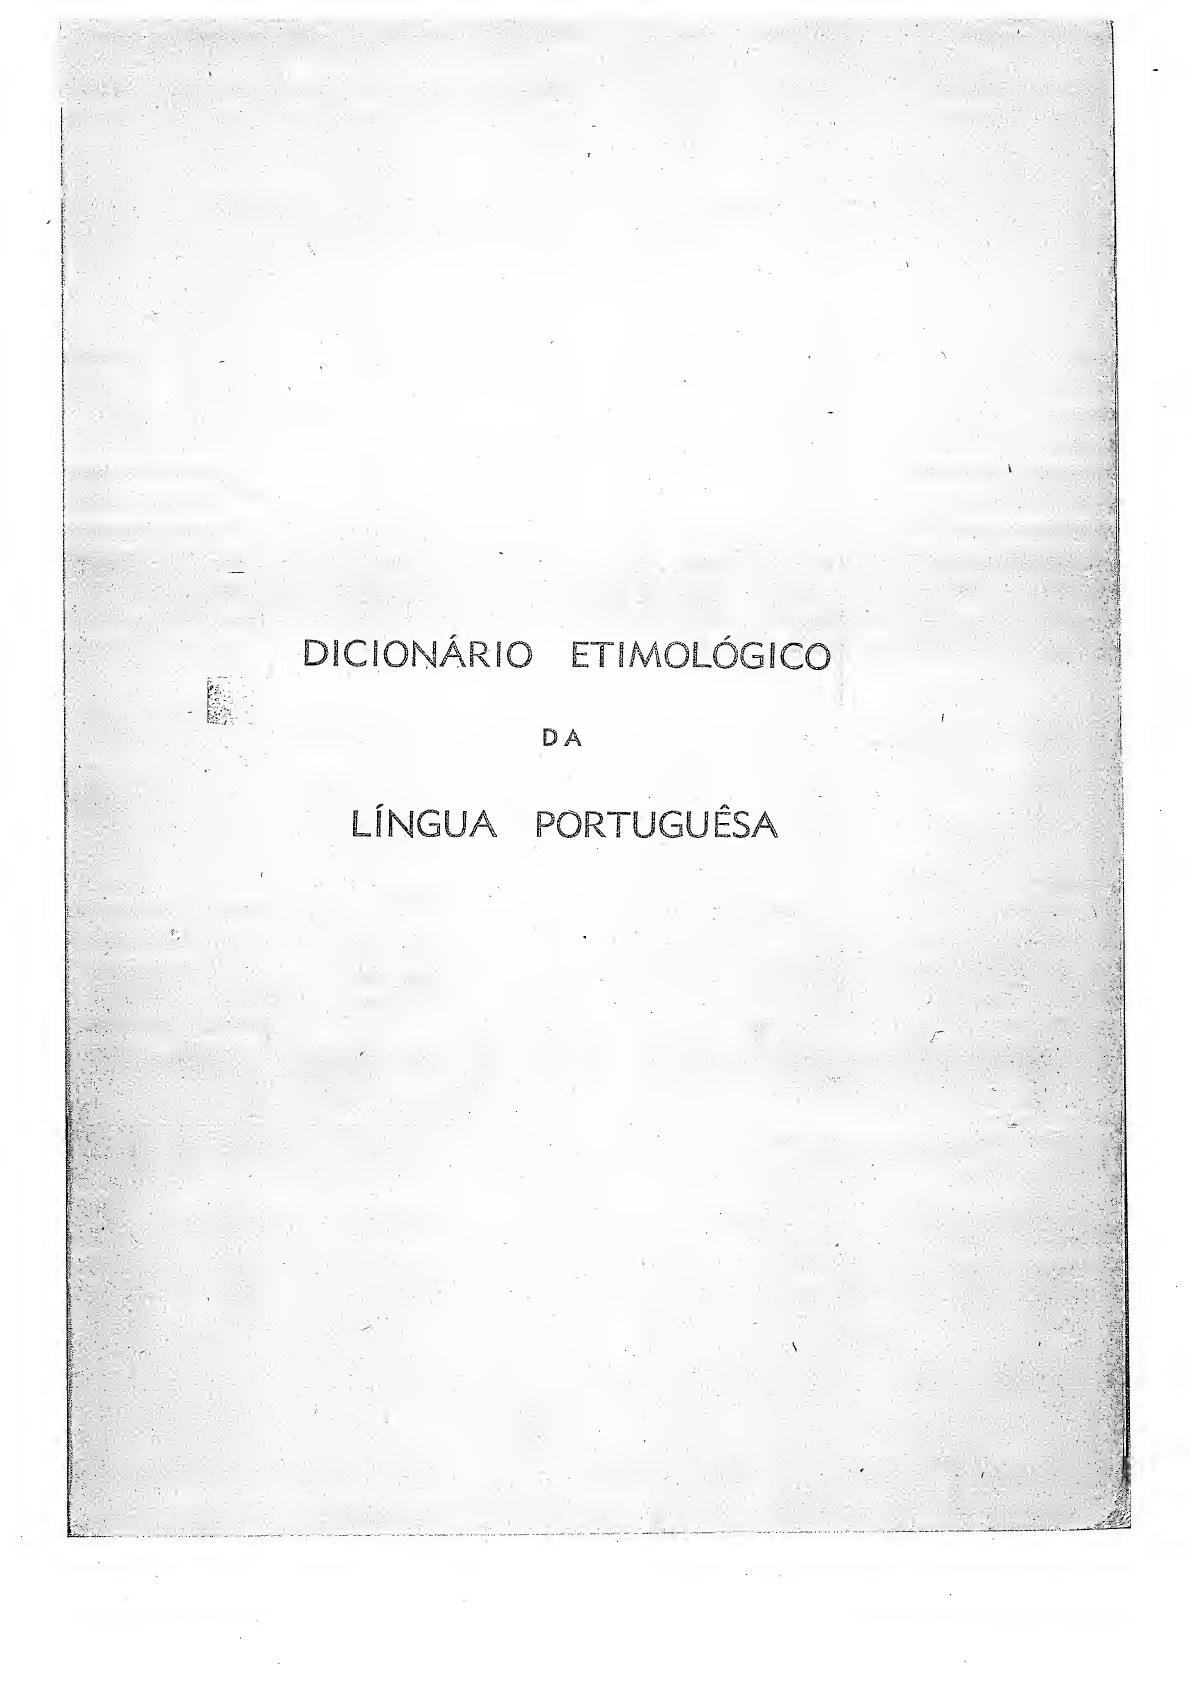 Adiafa - Dicio, Dicionário Online de Português